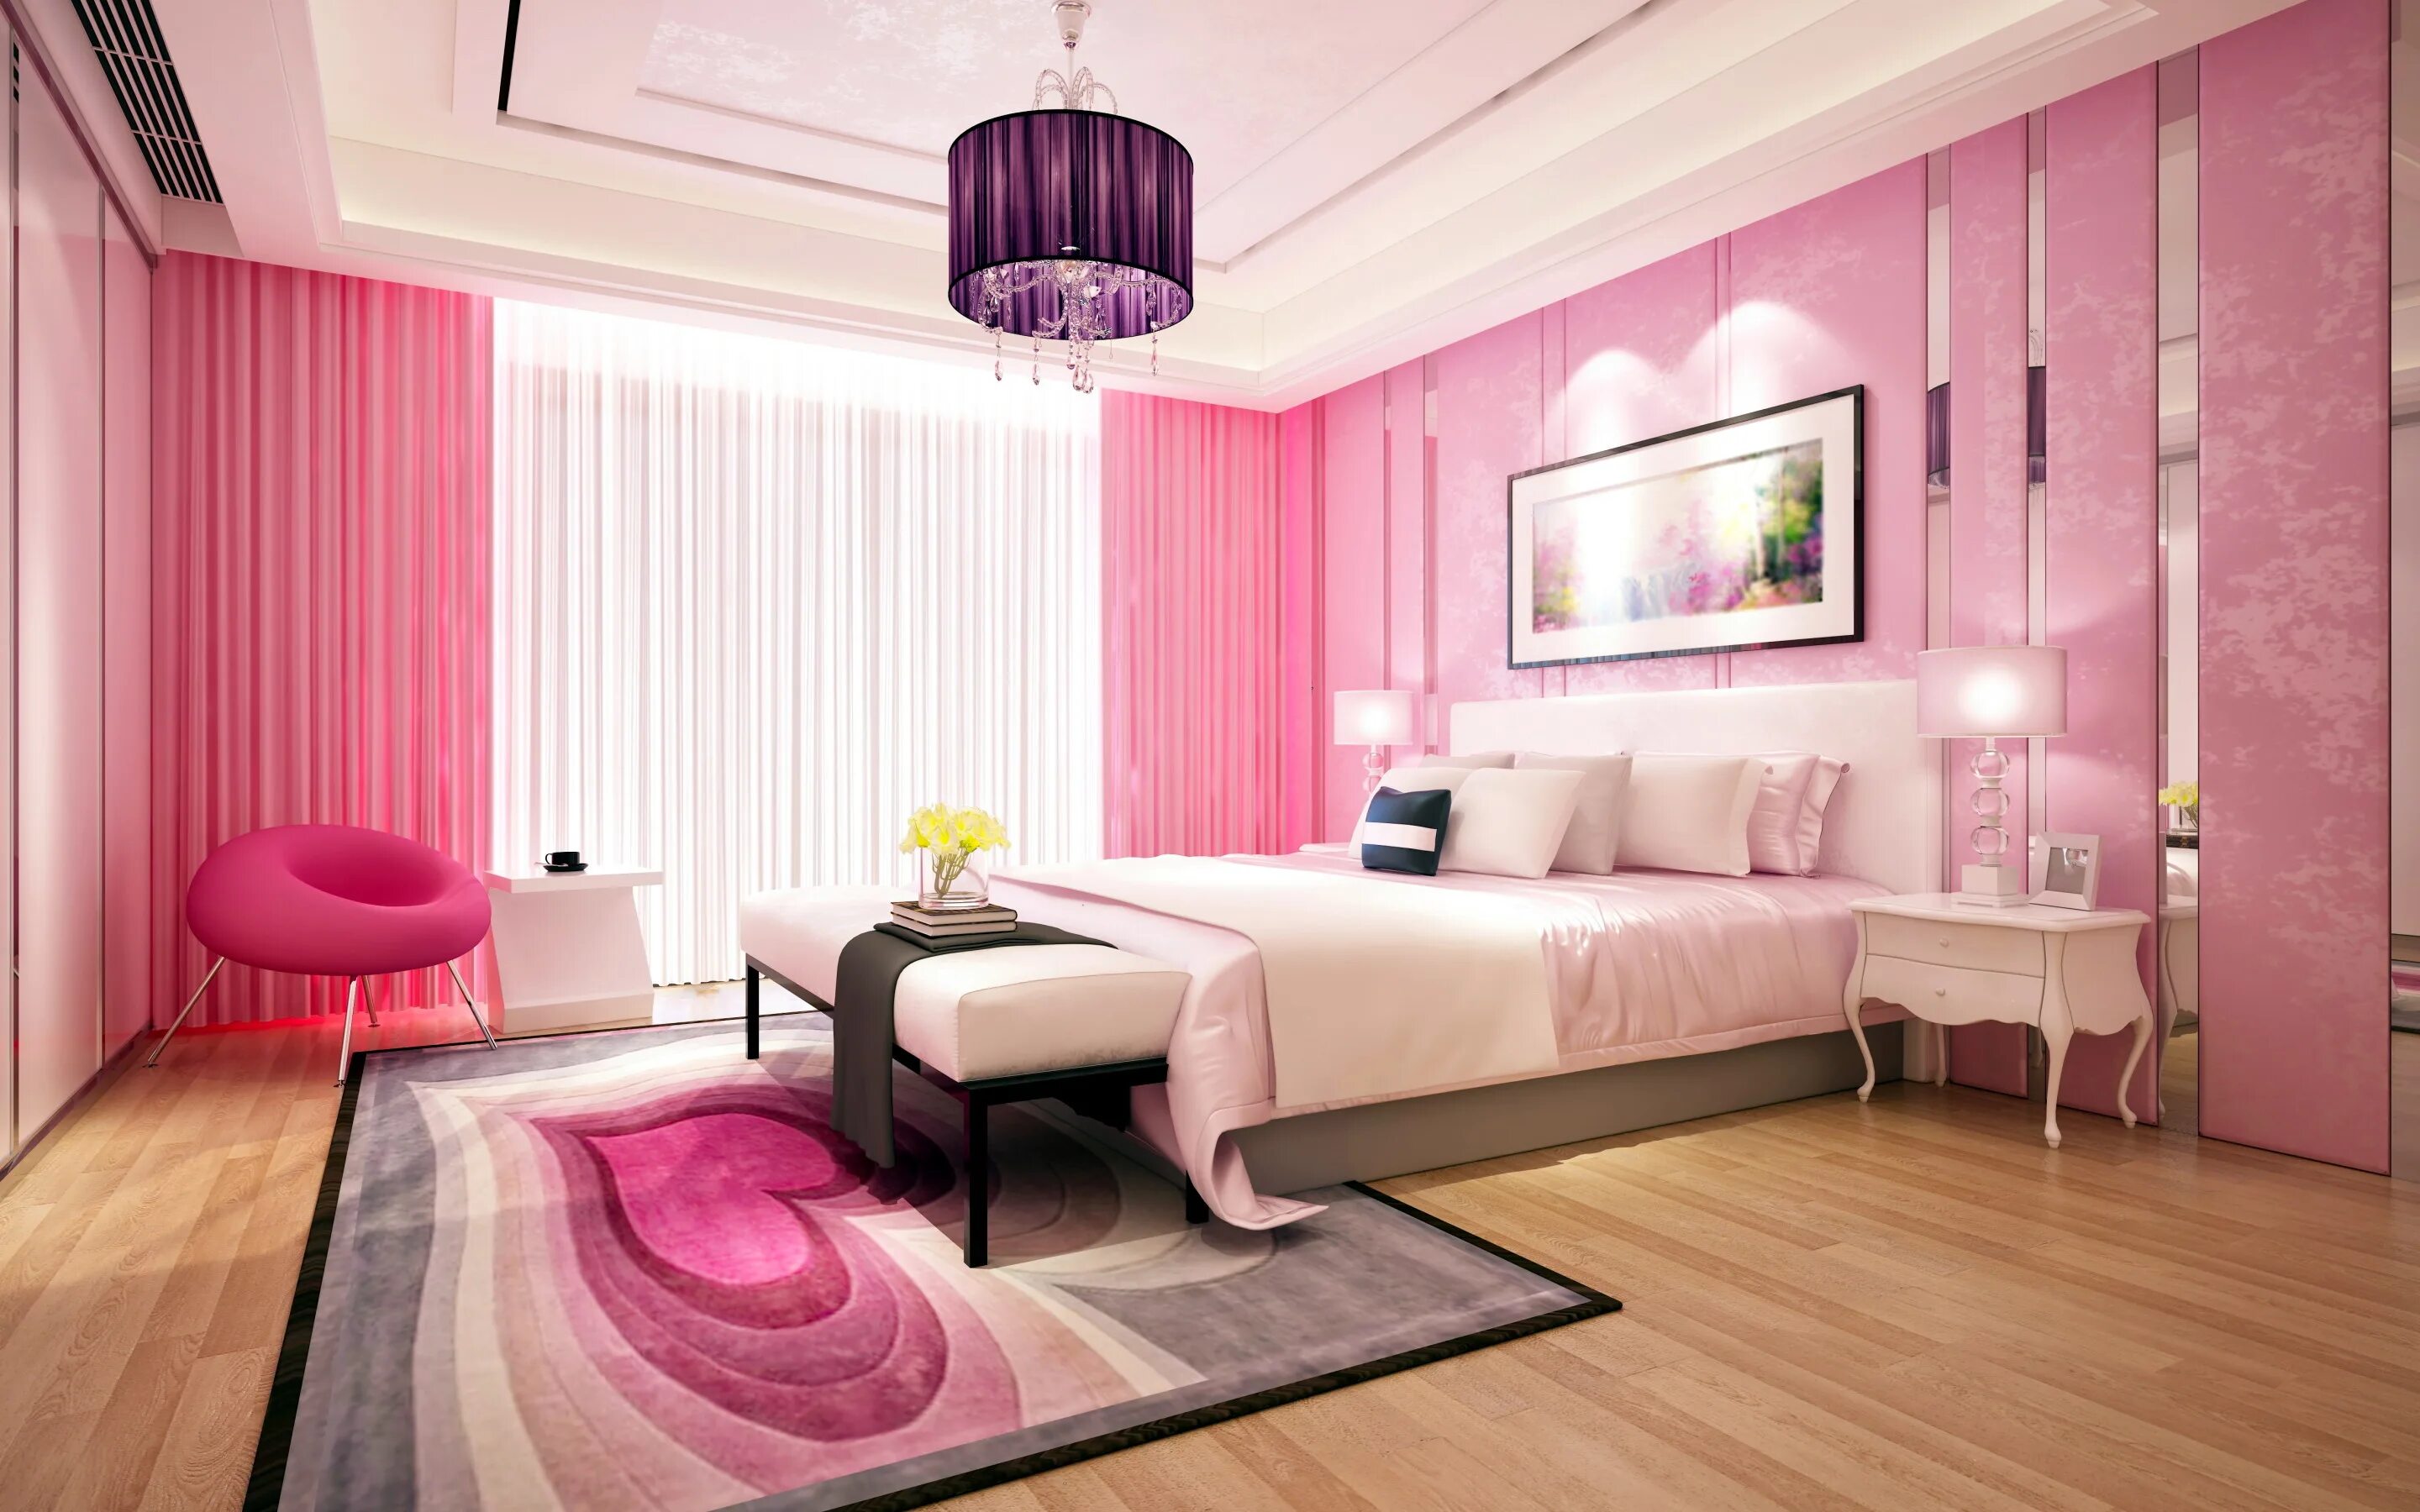 Сделай 1 розовым. Спальня в розовом цвете. Интерьер спальни в розовых тонах. Комната в розовых тонах. Спальня в розовом стиле.